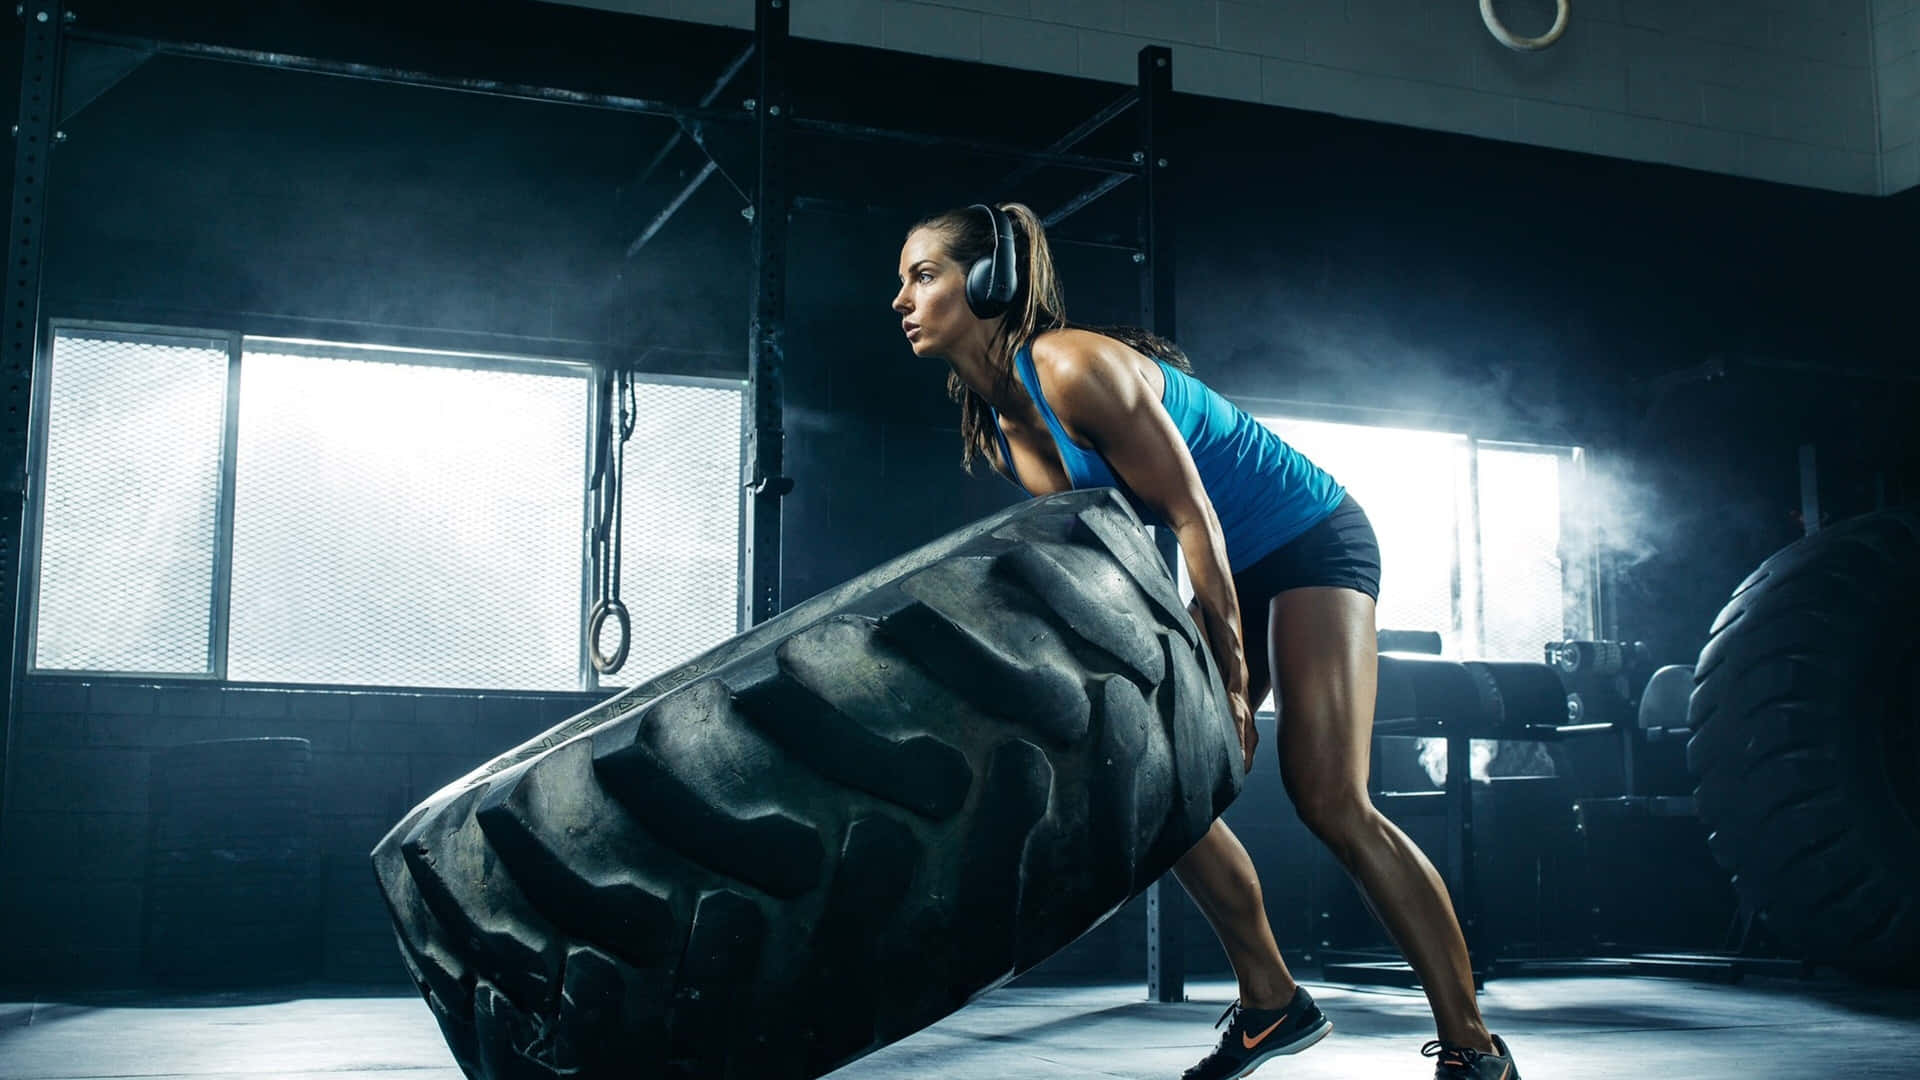 Powering Through The Training - Dedicated Sportswoman At 4k Gym Wallpaper